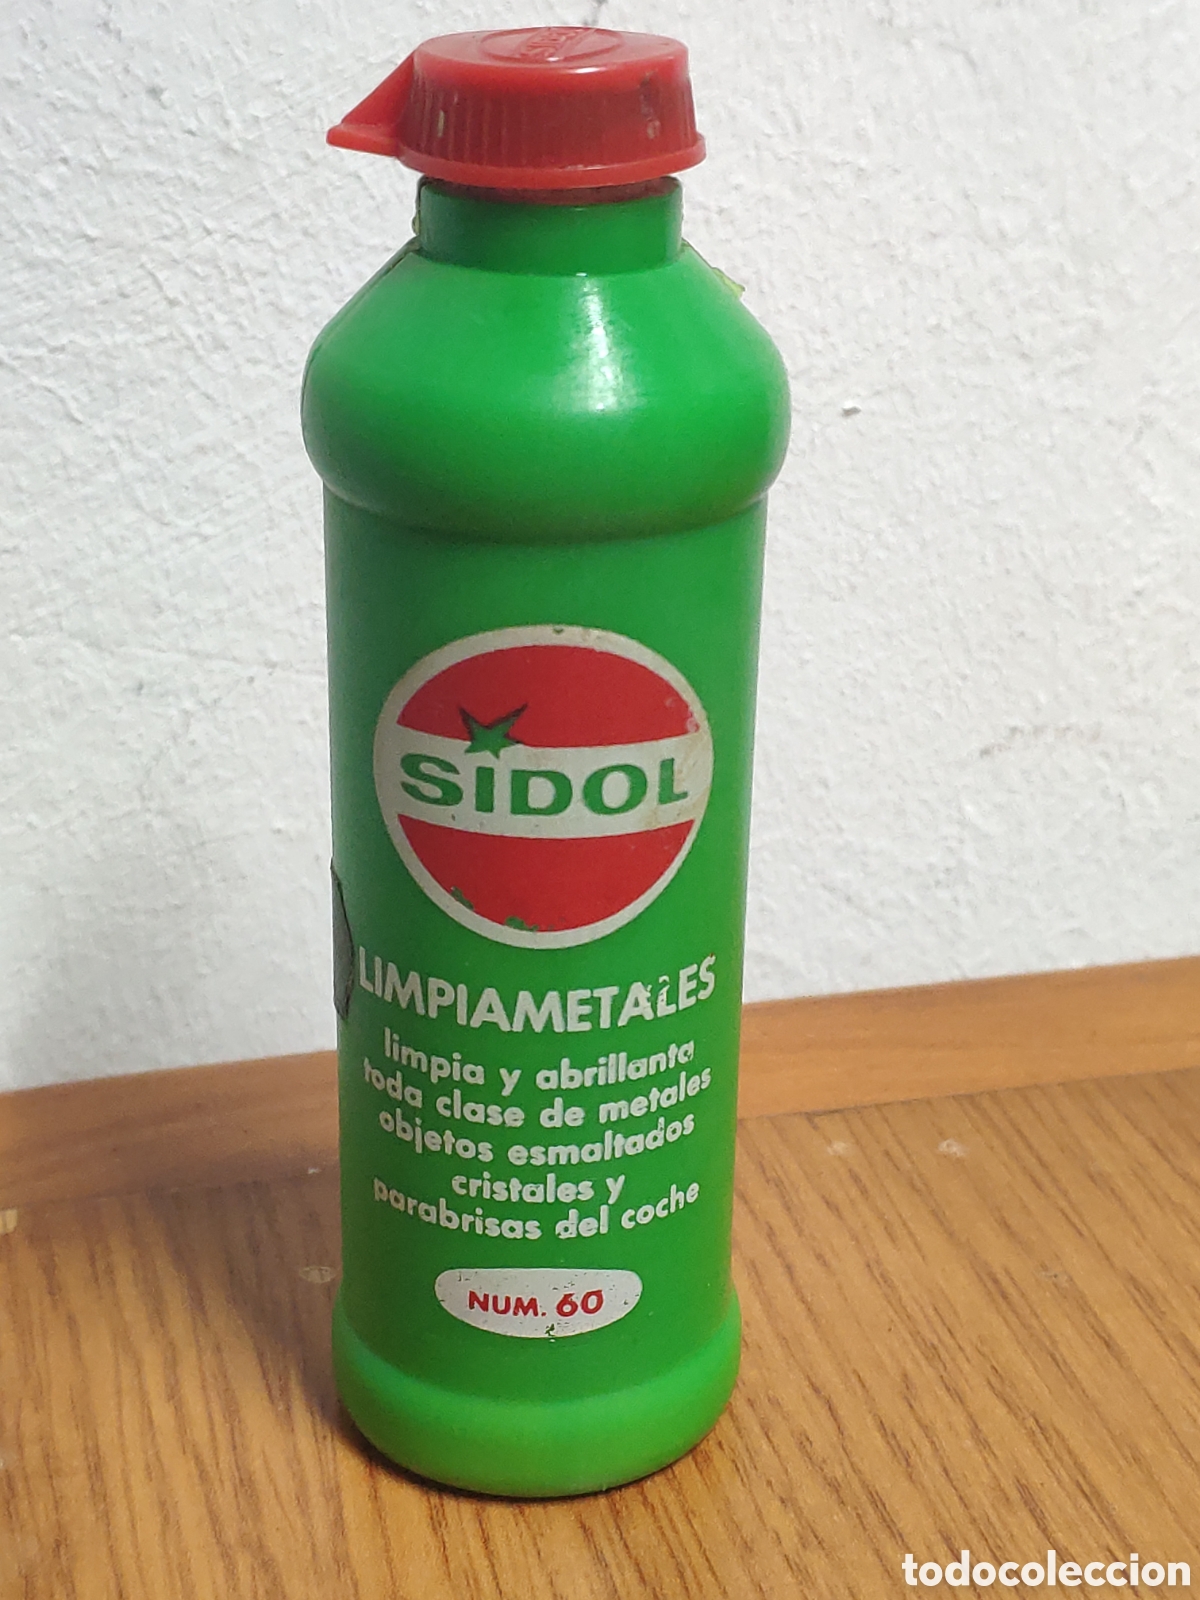 Limpiametales Sidol